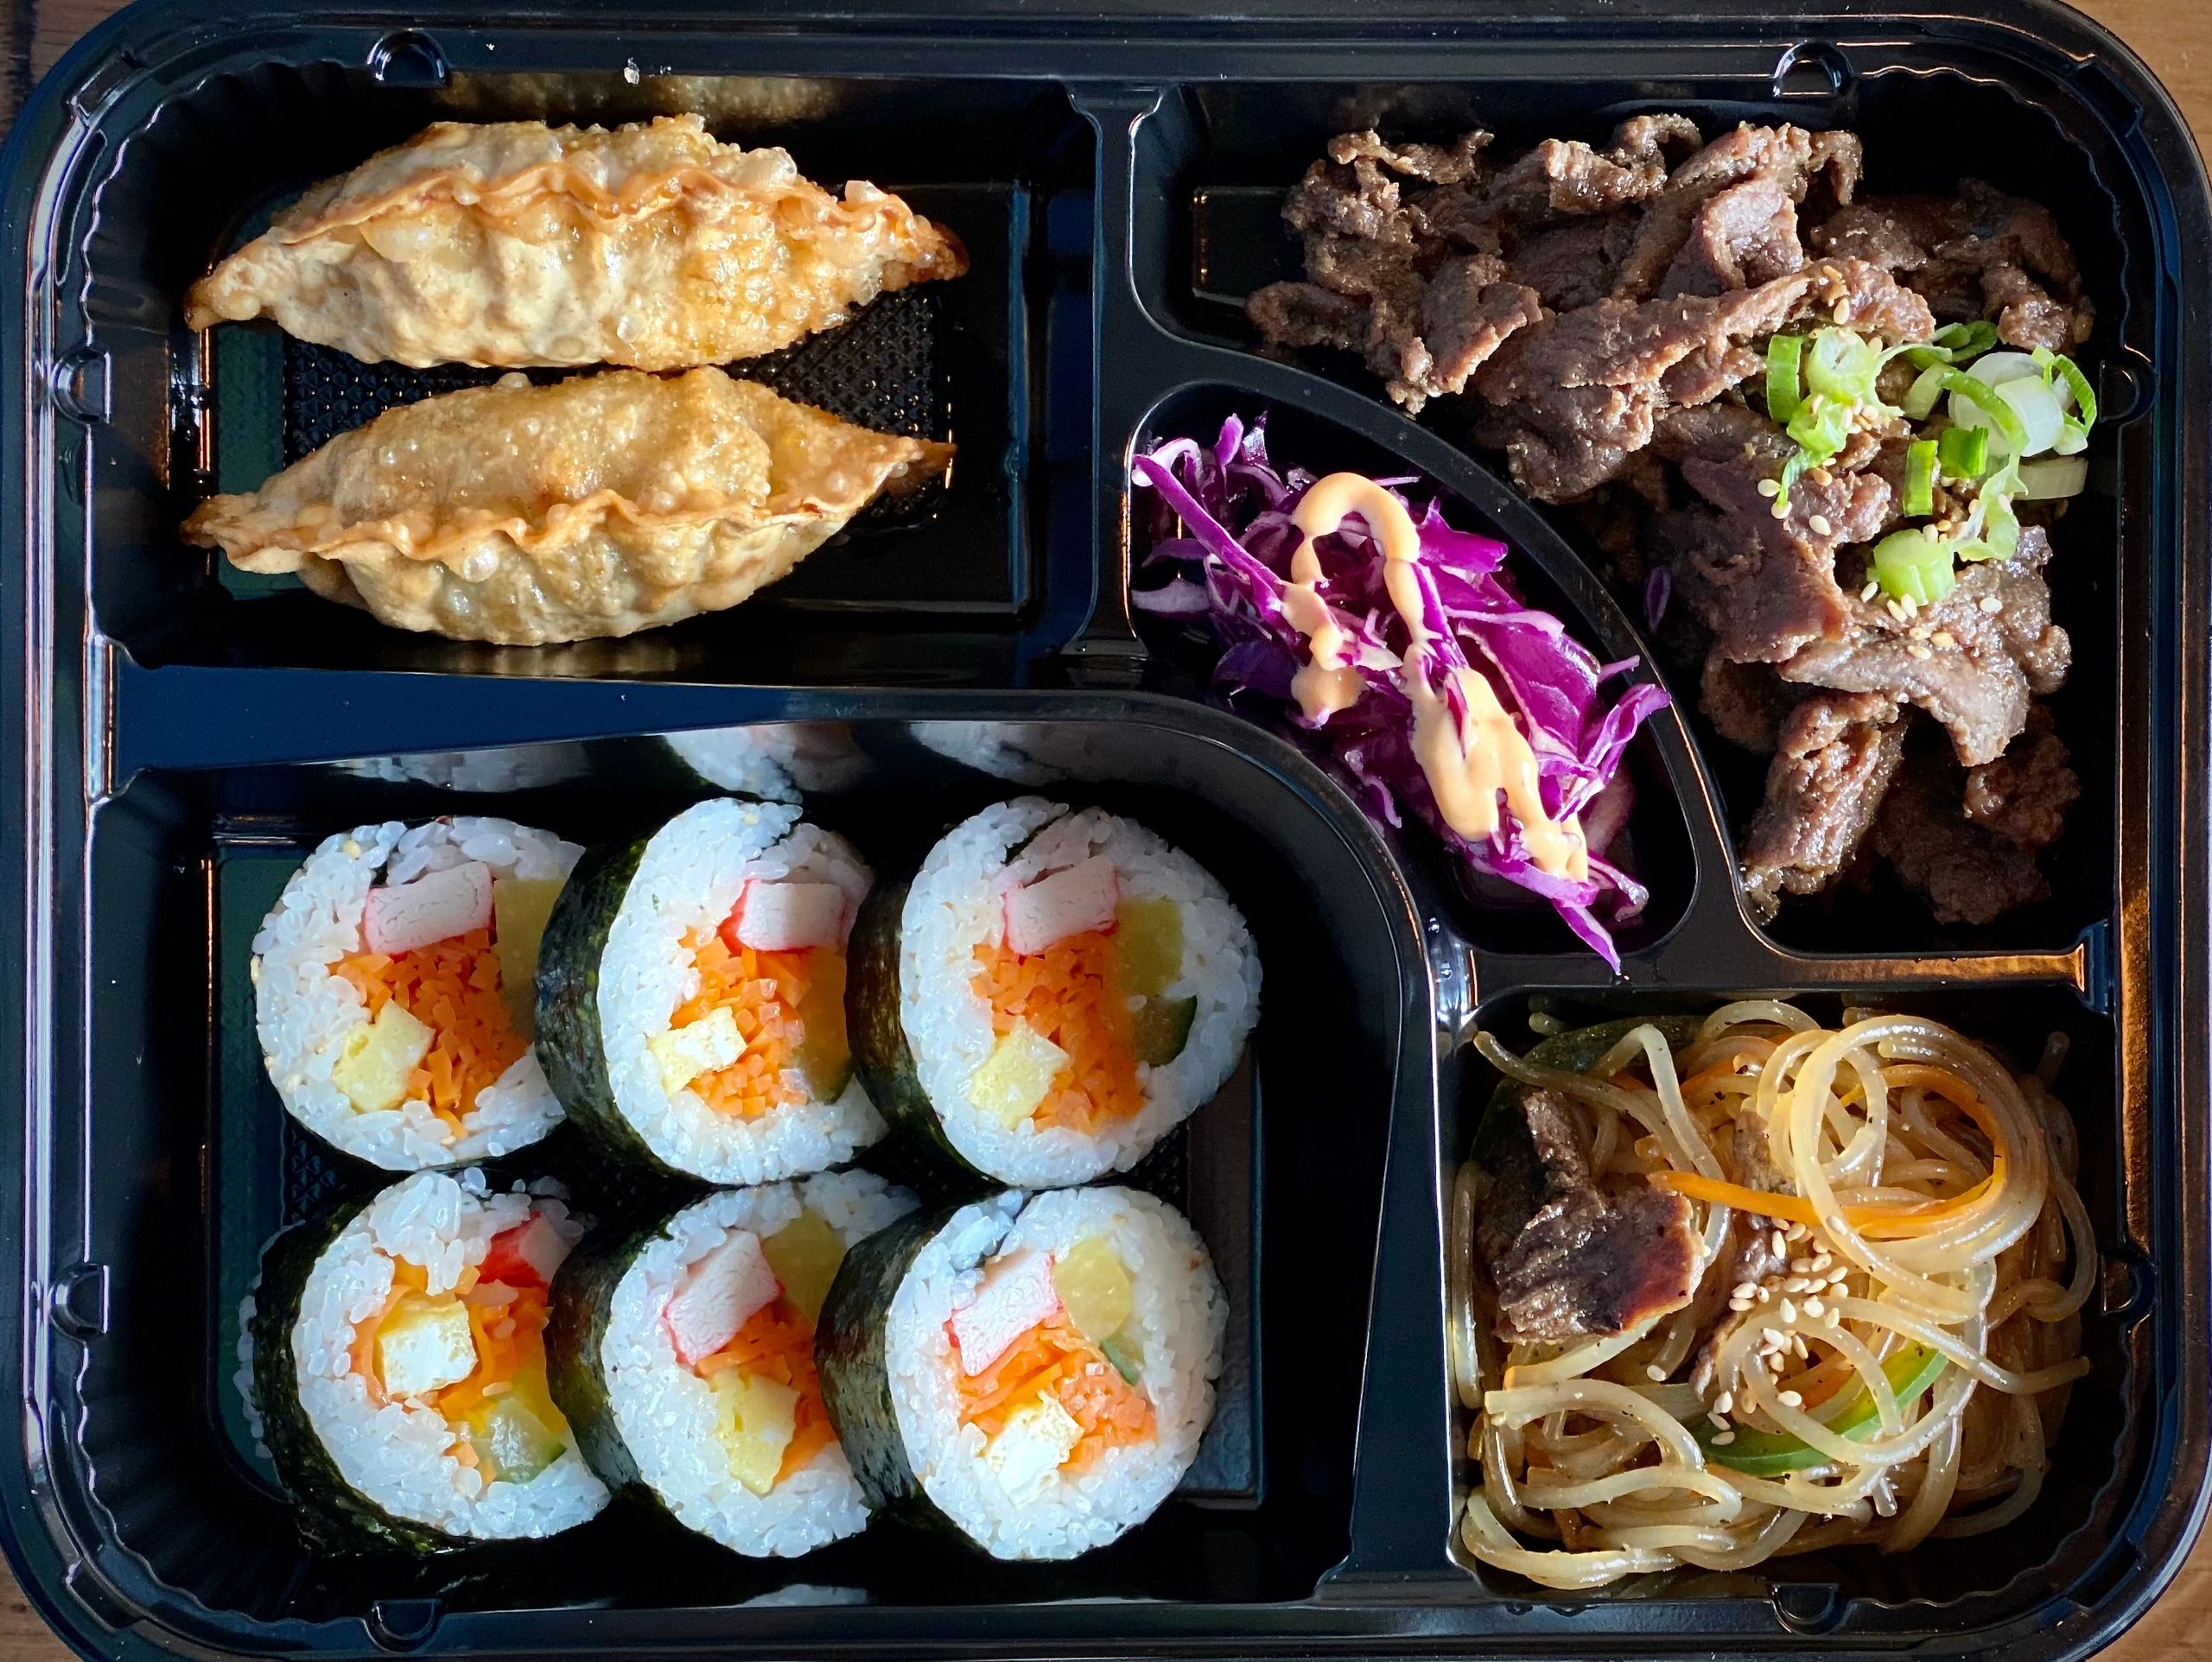 kimbap, glass noodle, bulgogi, mandu and salad